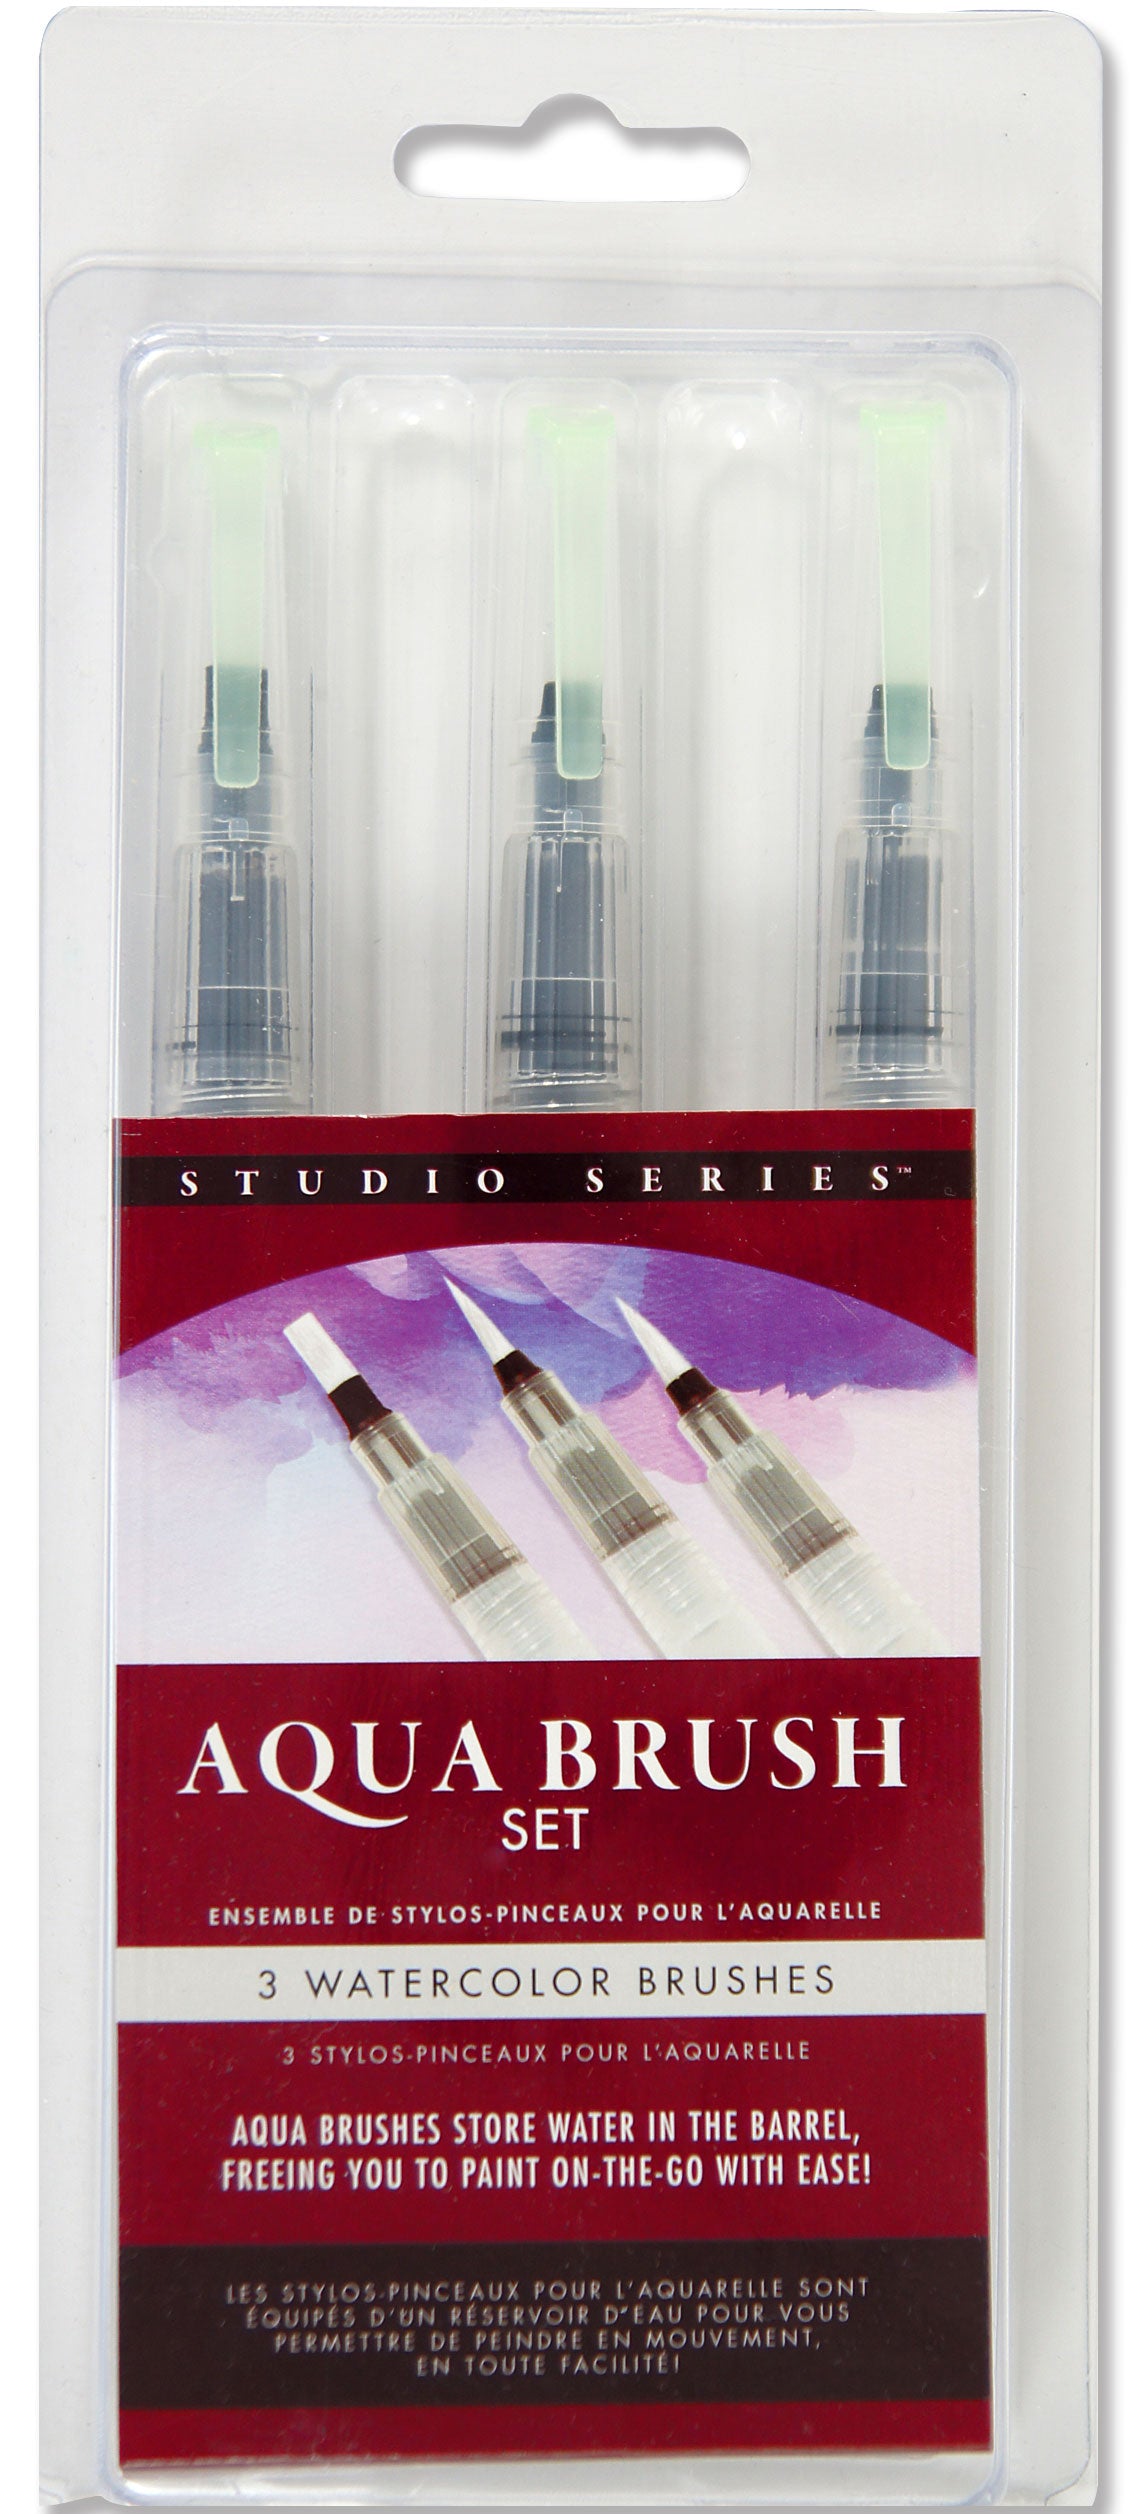 Studio Series Aqua Brushes - Heart of the Home PA